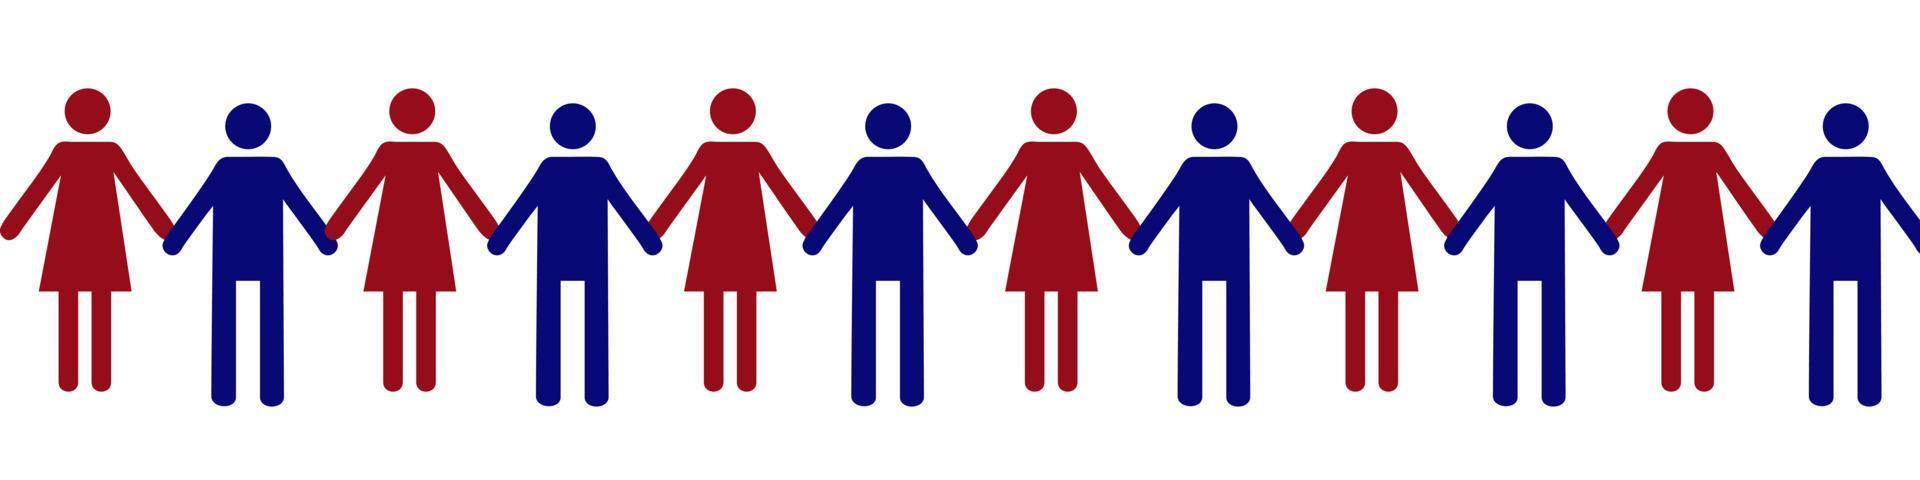 pictogramme d'hommes. hommes et femmes se tenant la main. communauté unie de personnes ayant les mêmes intérêts. icône de confiance pour les modèles et la conception Web vecteur